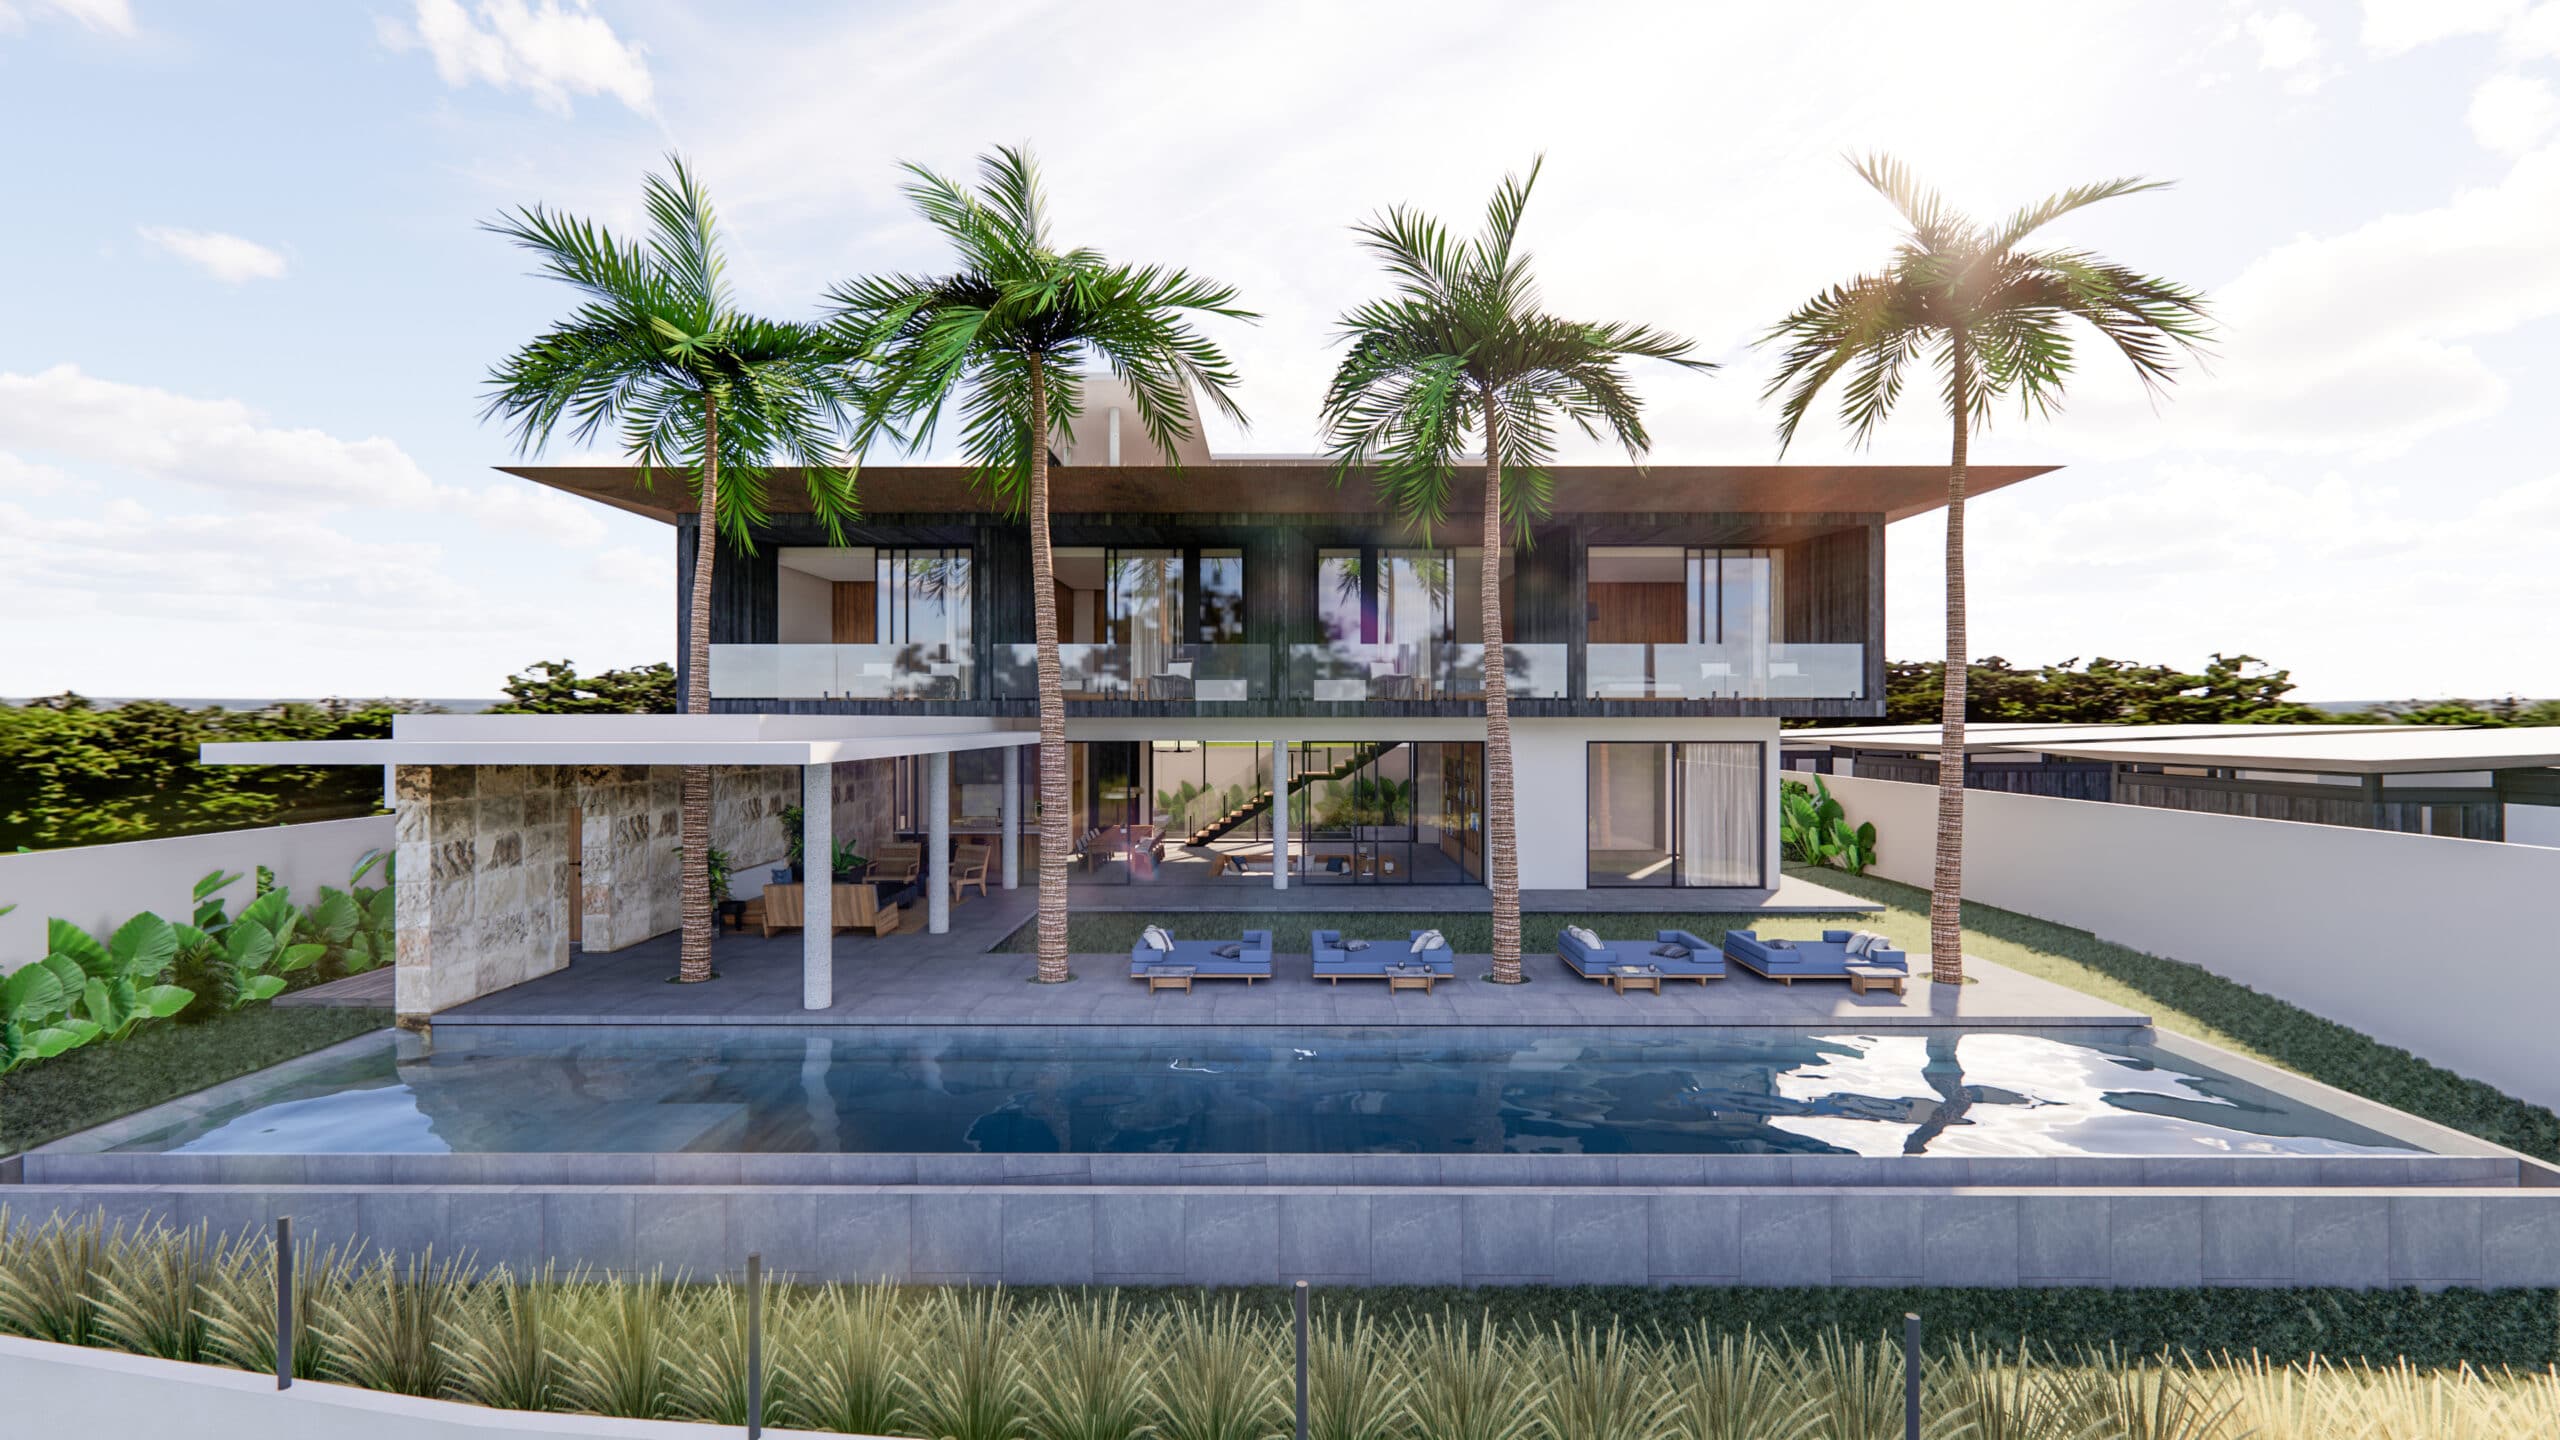 Design Assembly - Bingin Forest Villa - Bali Architect - Interior Design - Bali Villa - Building Facade - Swimming Pool